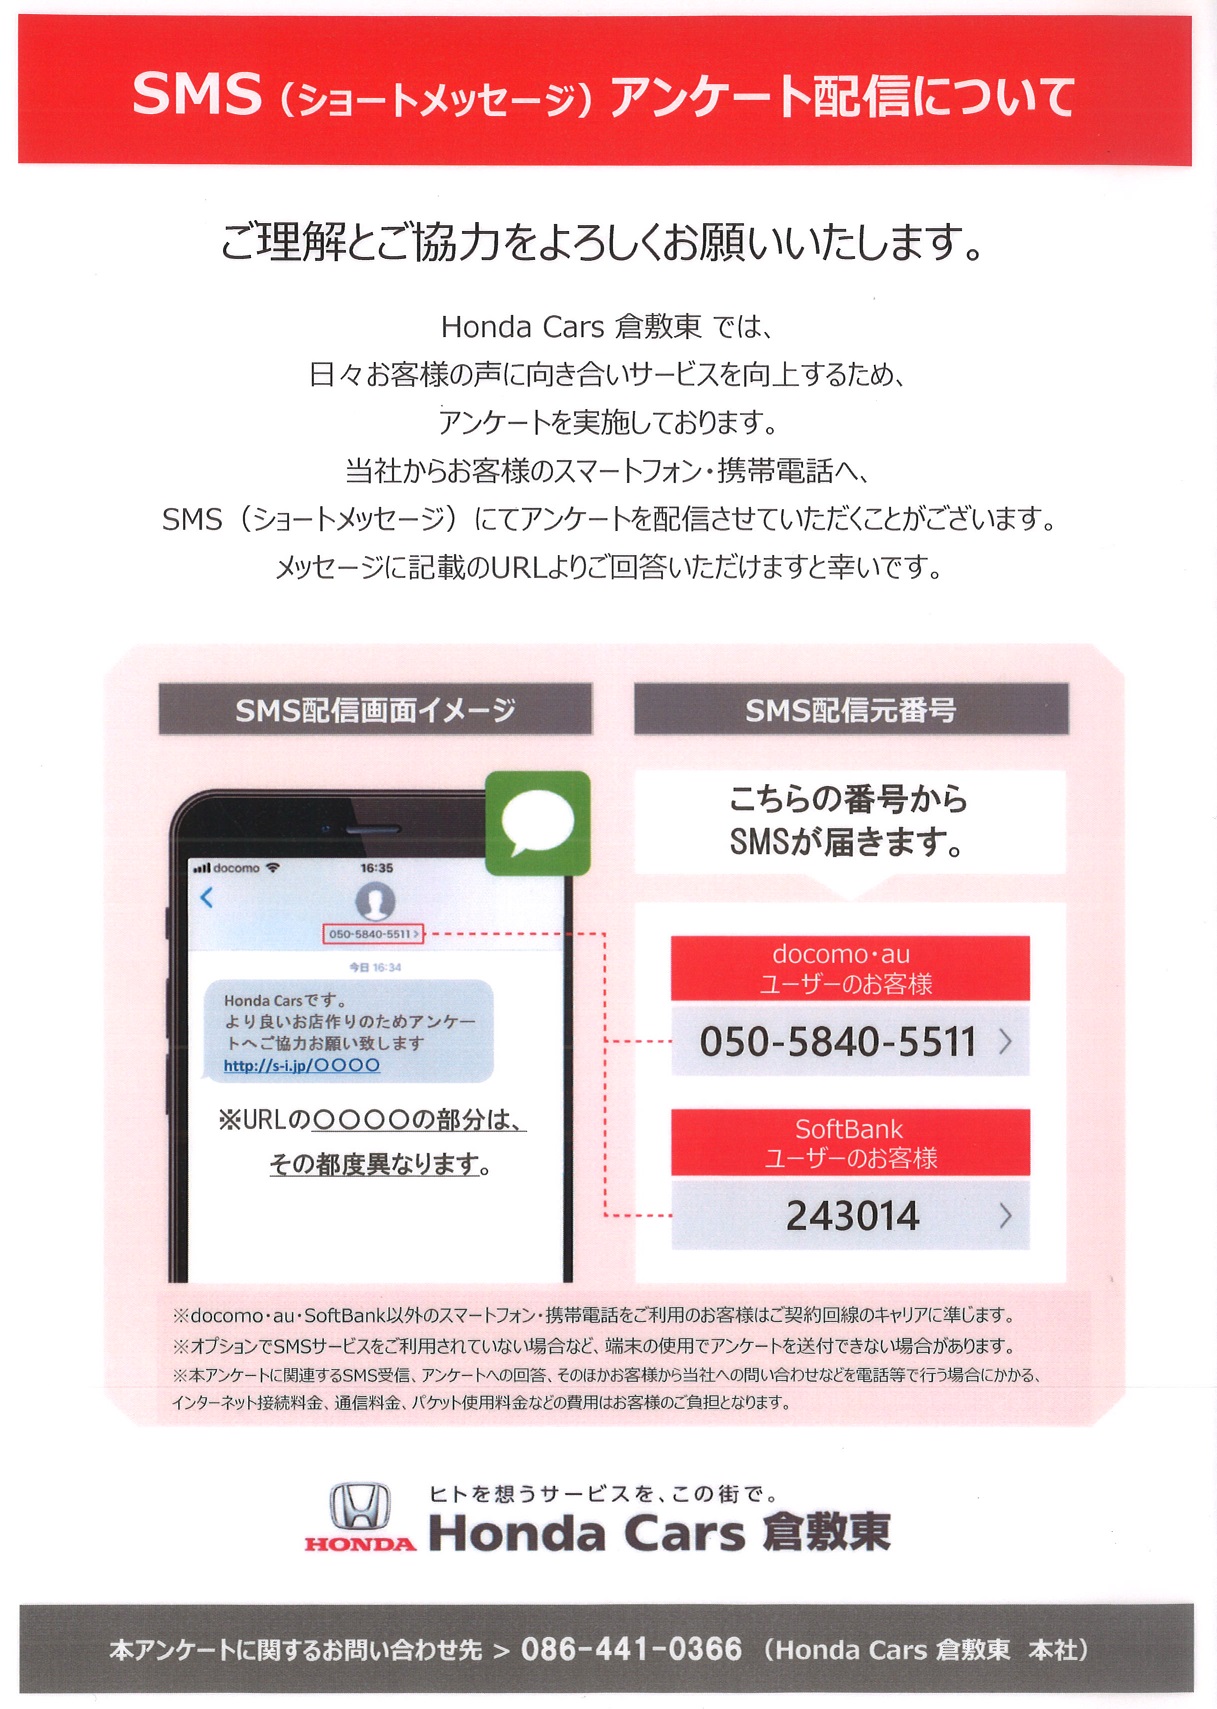 SMS sasaoki